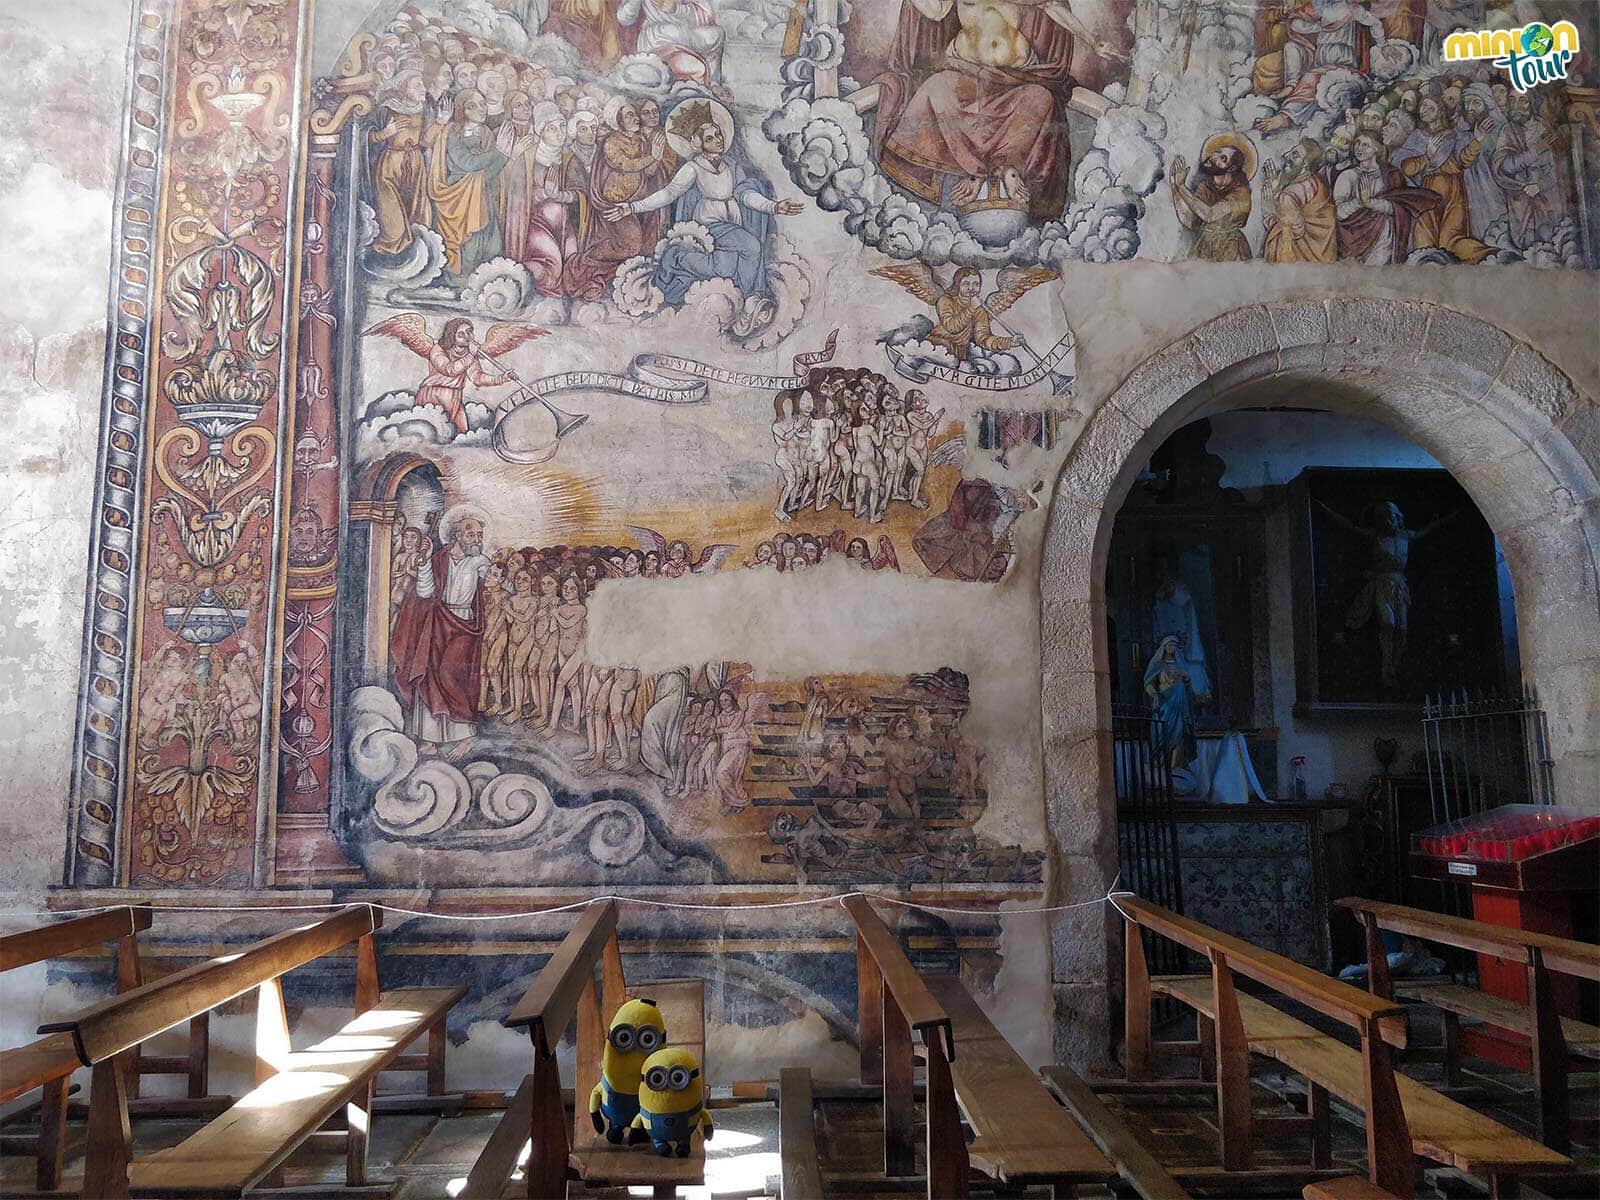 Escena del Juicio final de las pinturas de Santa María de Nogueira